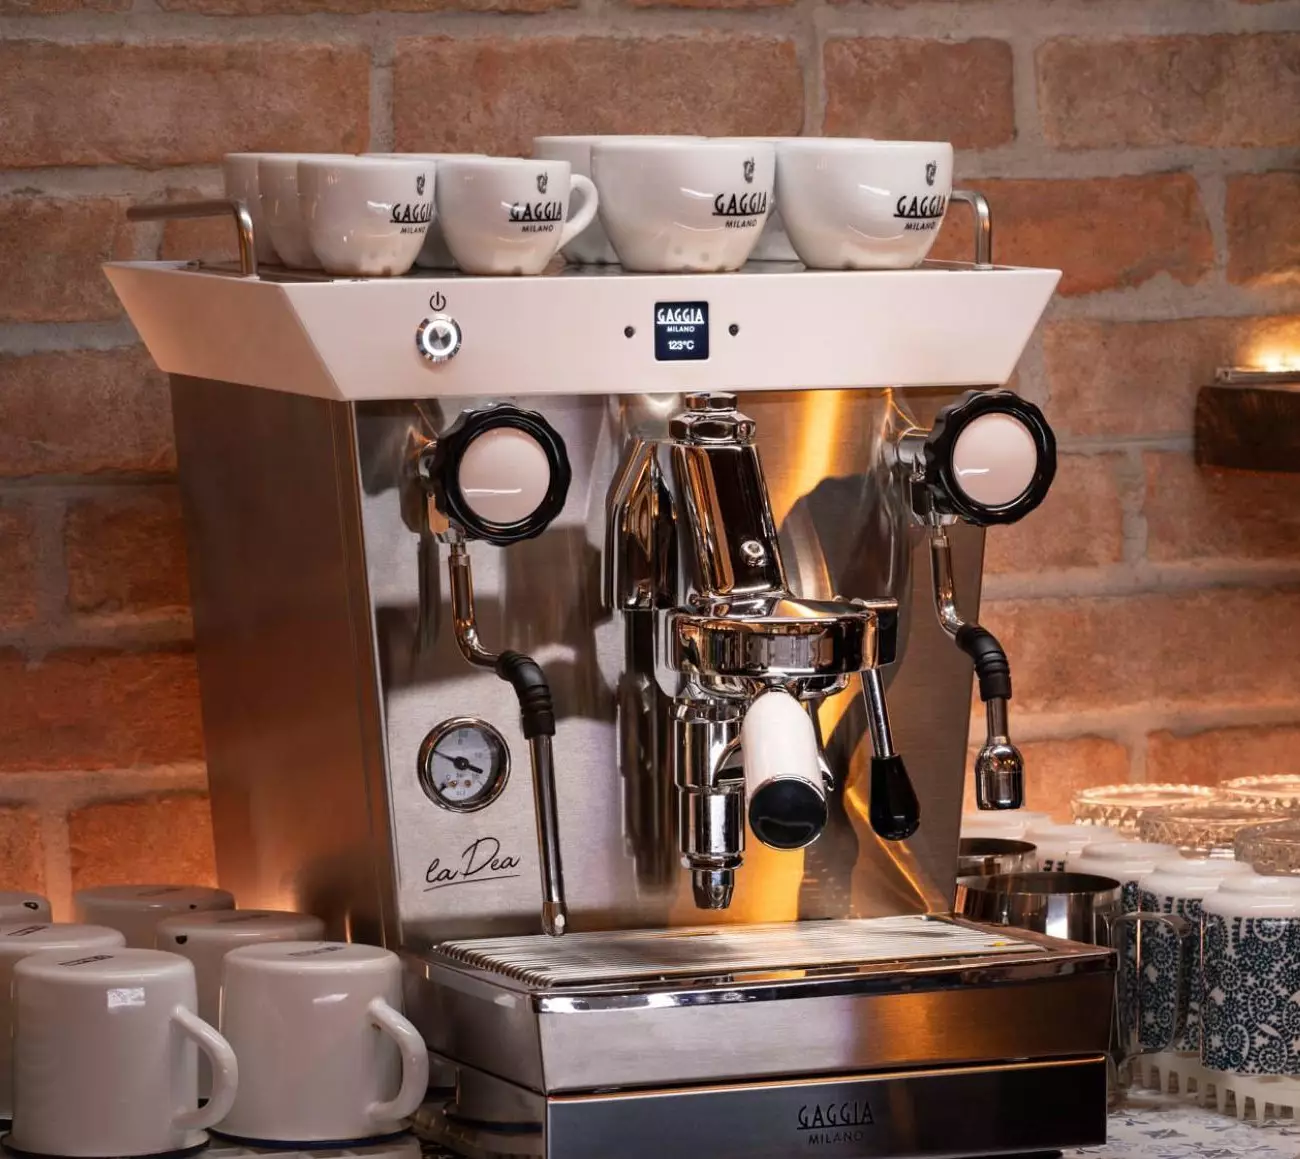 Entender mal papelería construir Más que un sueño: así es La Dea, la nueva máquina de café espresso -  HostelVending